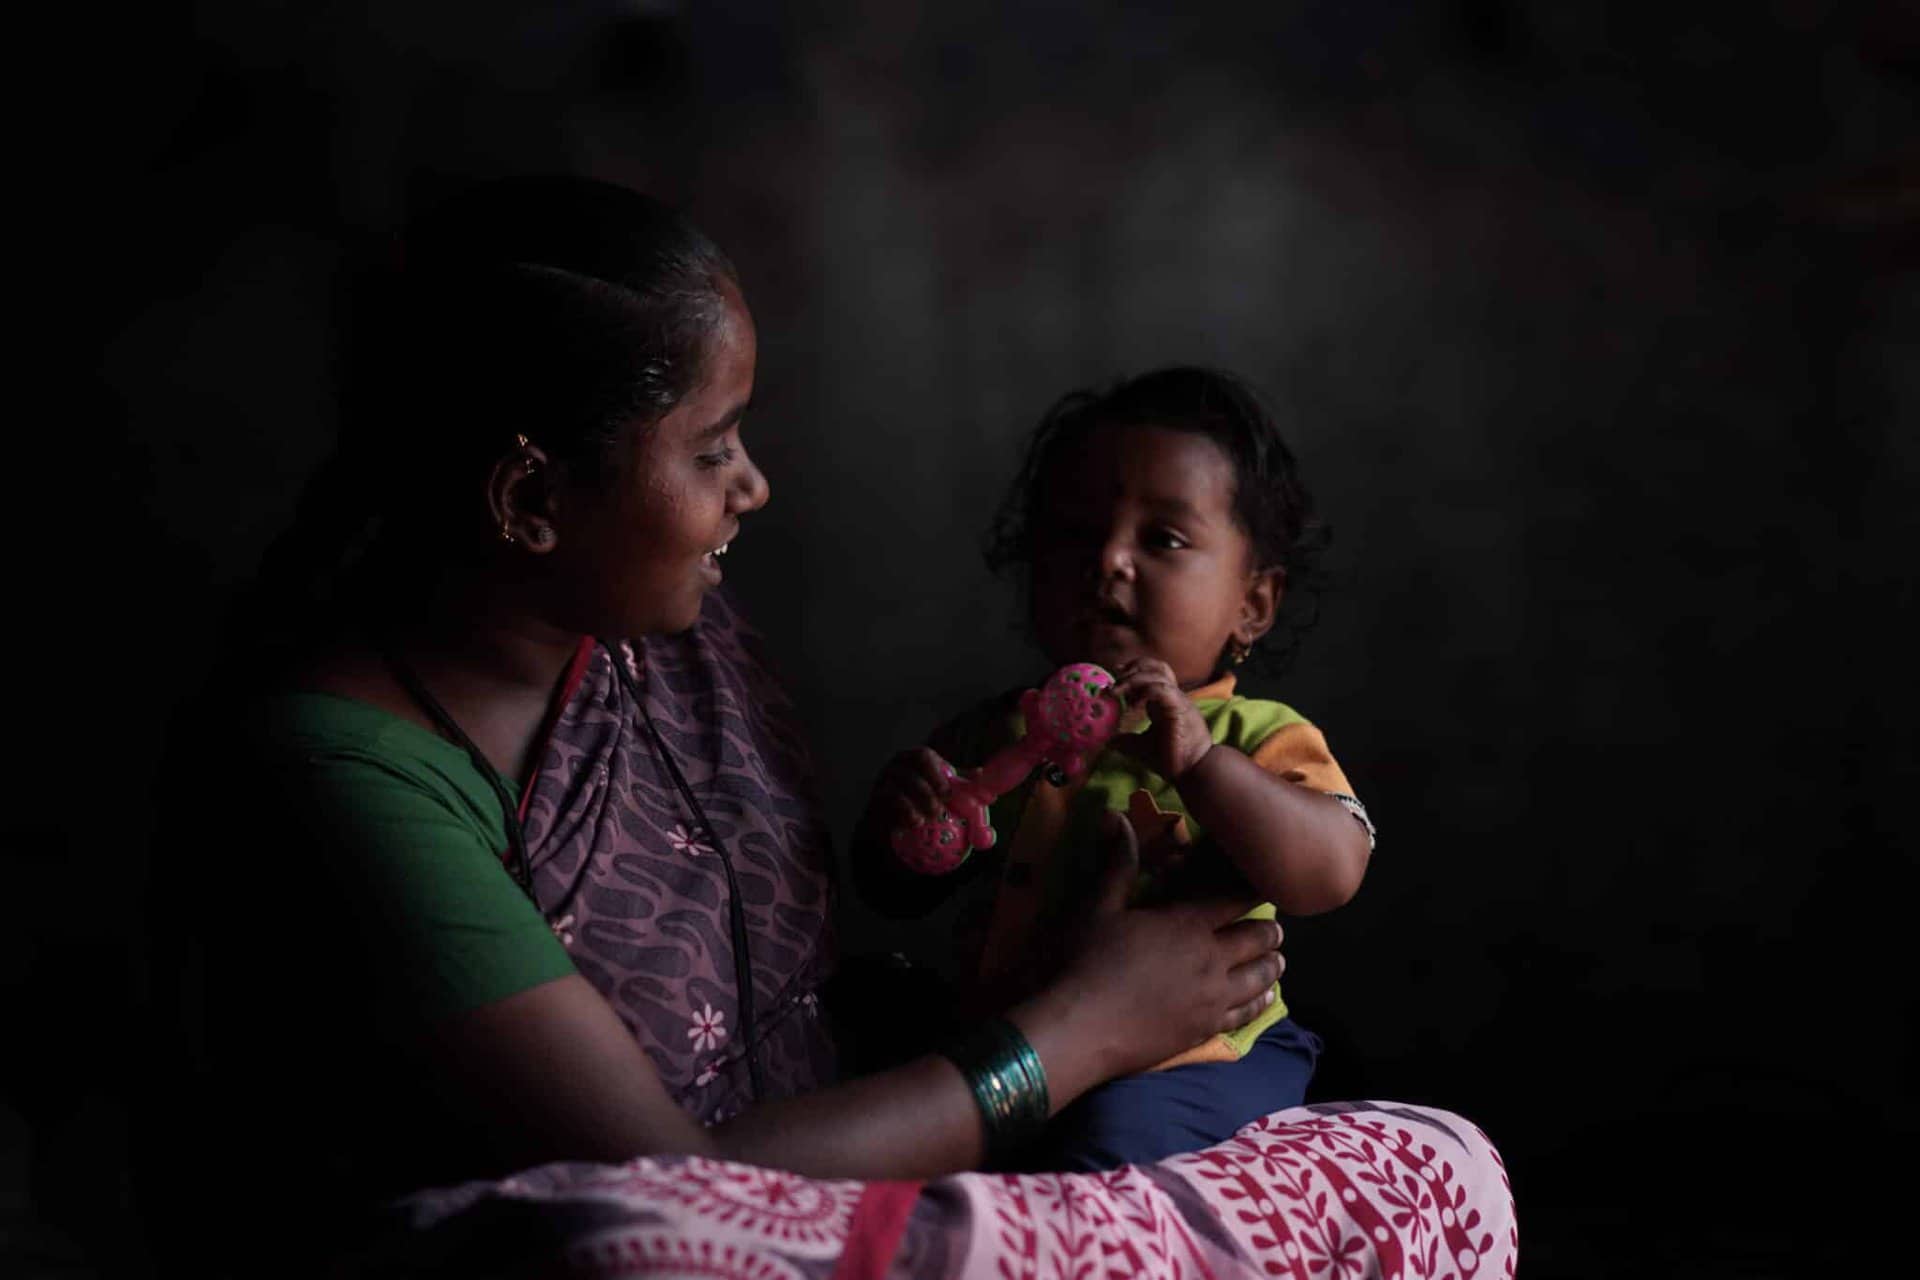 L’accès aux soins de santé pour les femmes migrantes en Inde